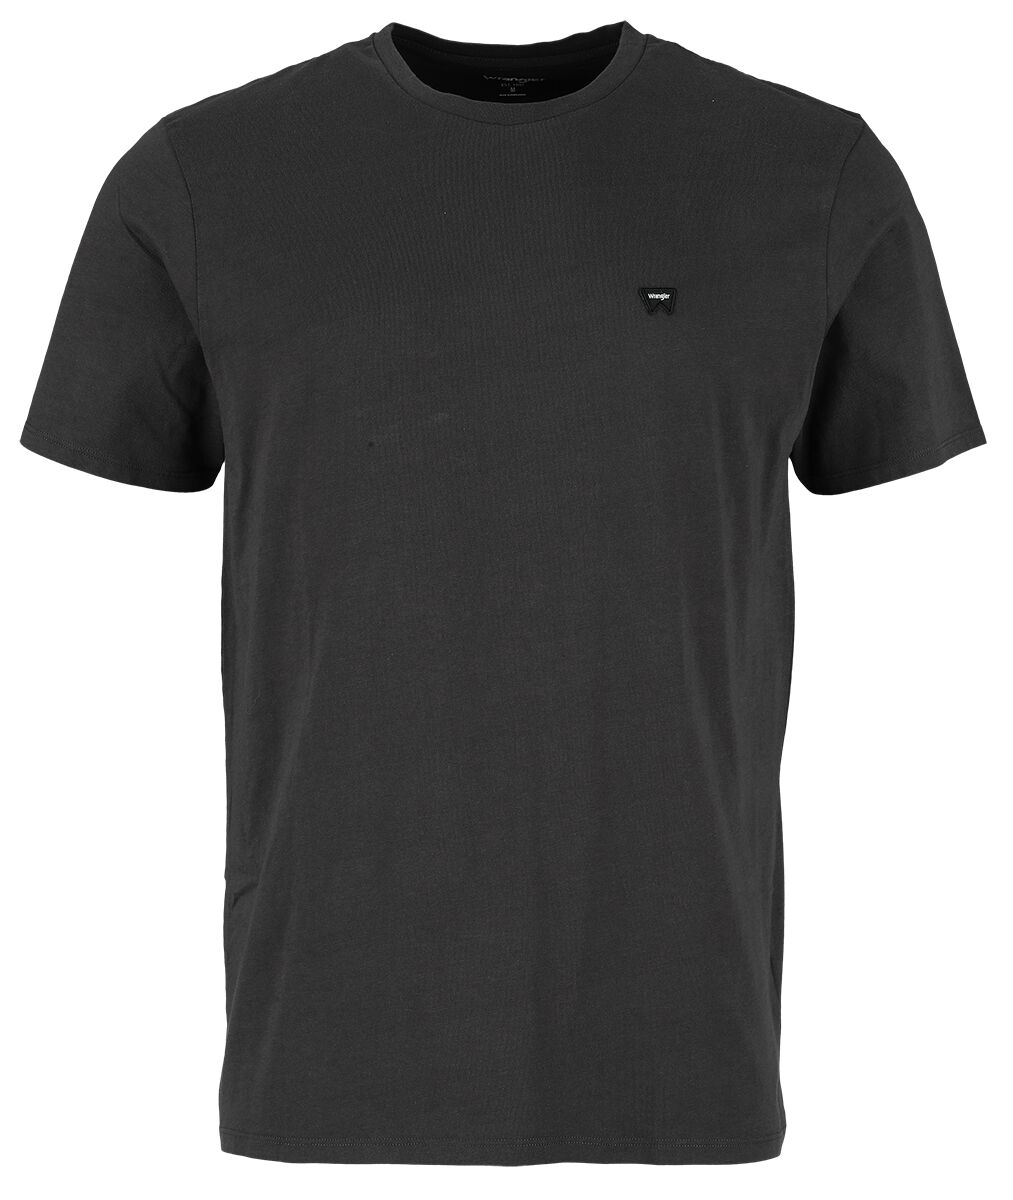 Wrangler T-Shirt - Sign Off Tee Faded Black - S bis XXL - für Männer - Größe M - schwarz